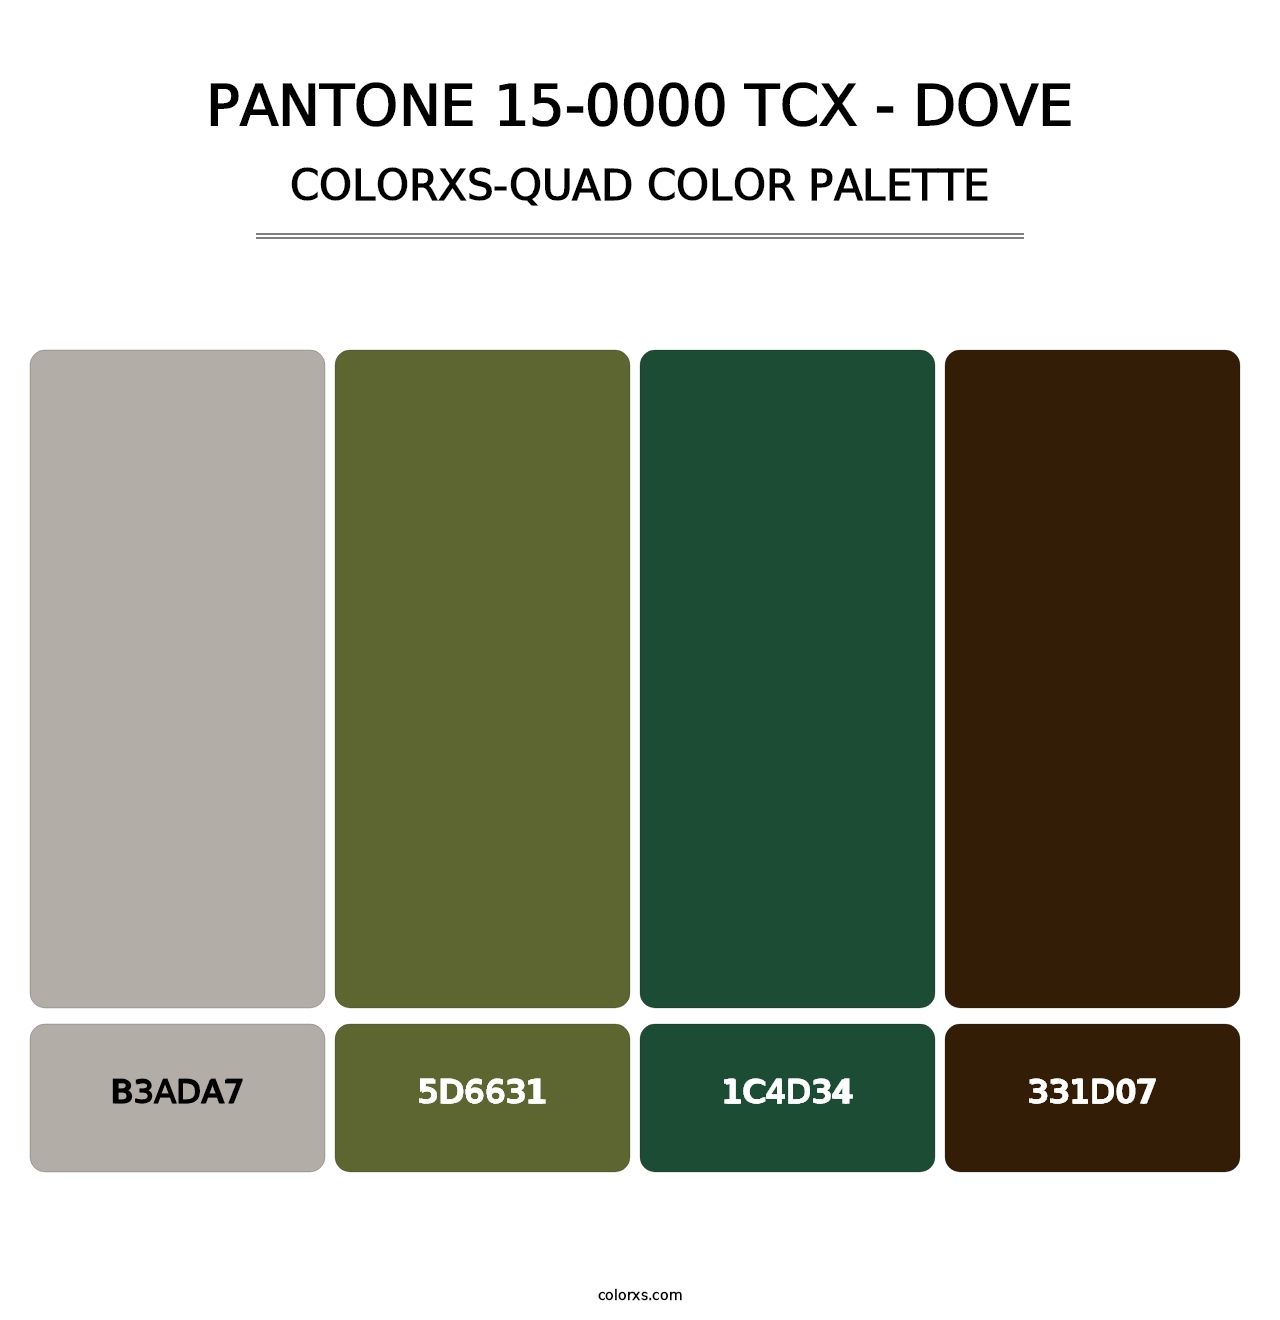 PANTONE 15-0000 TCX - Dove - Colorxs Quad Palette